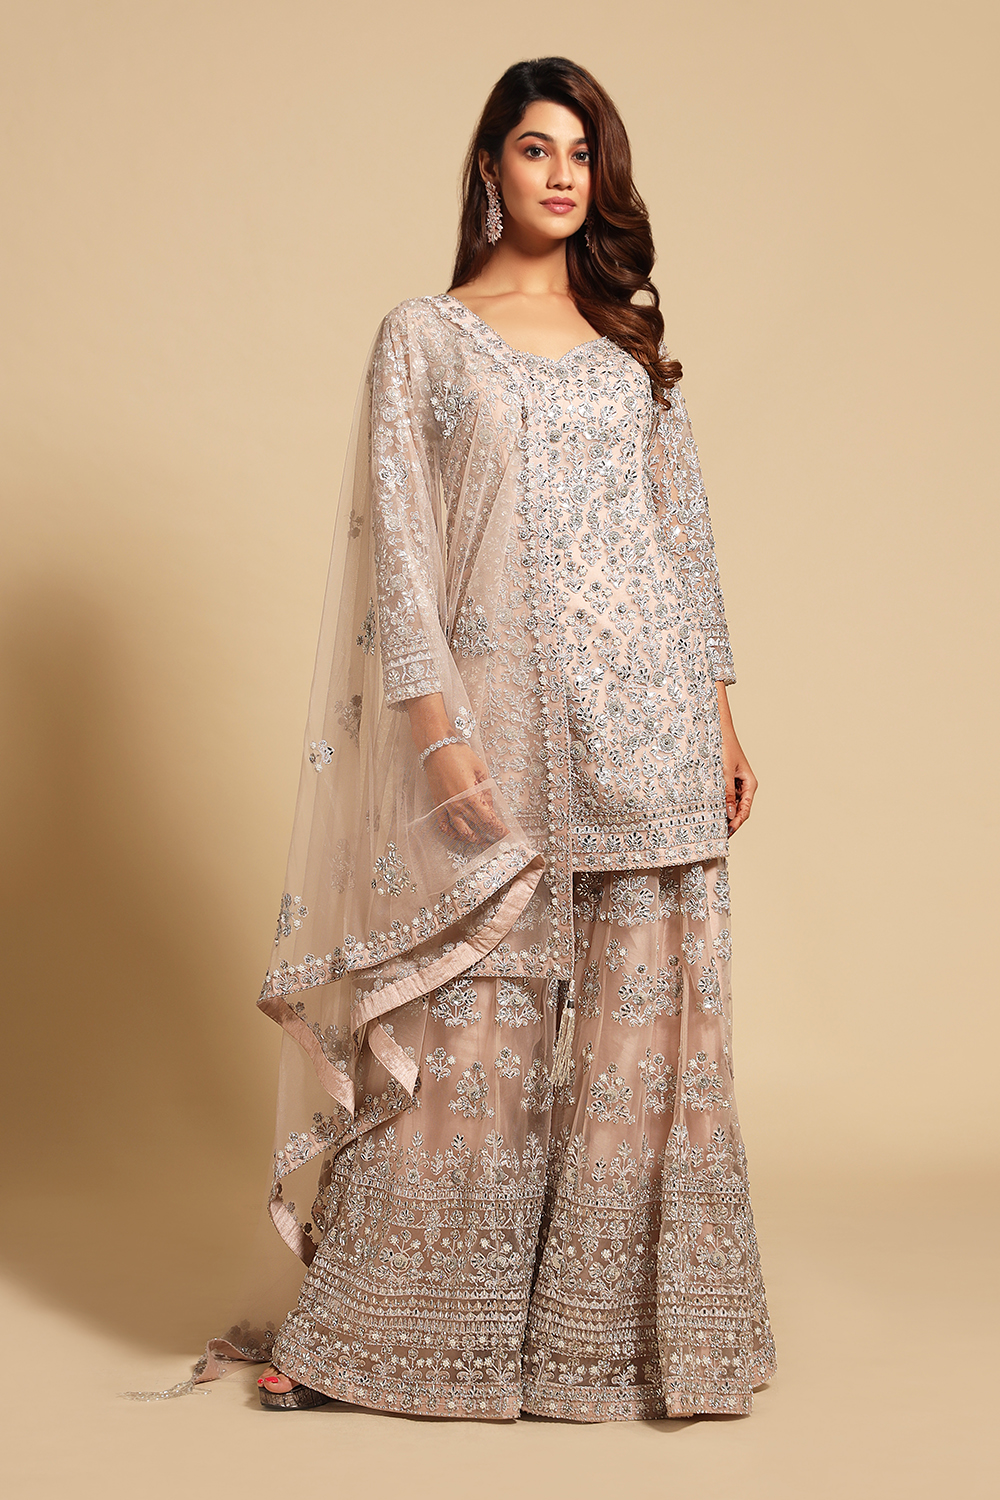 Buy Salwar Kameez Online | Pakistani Salwar Suits USA | Indian Dresses Sale  USA: Olive, Violet and Khaki